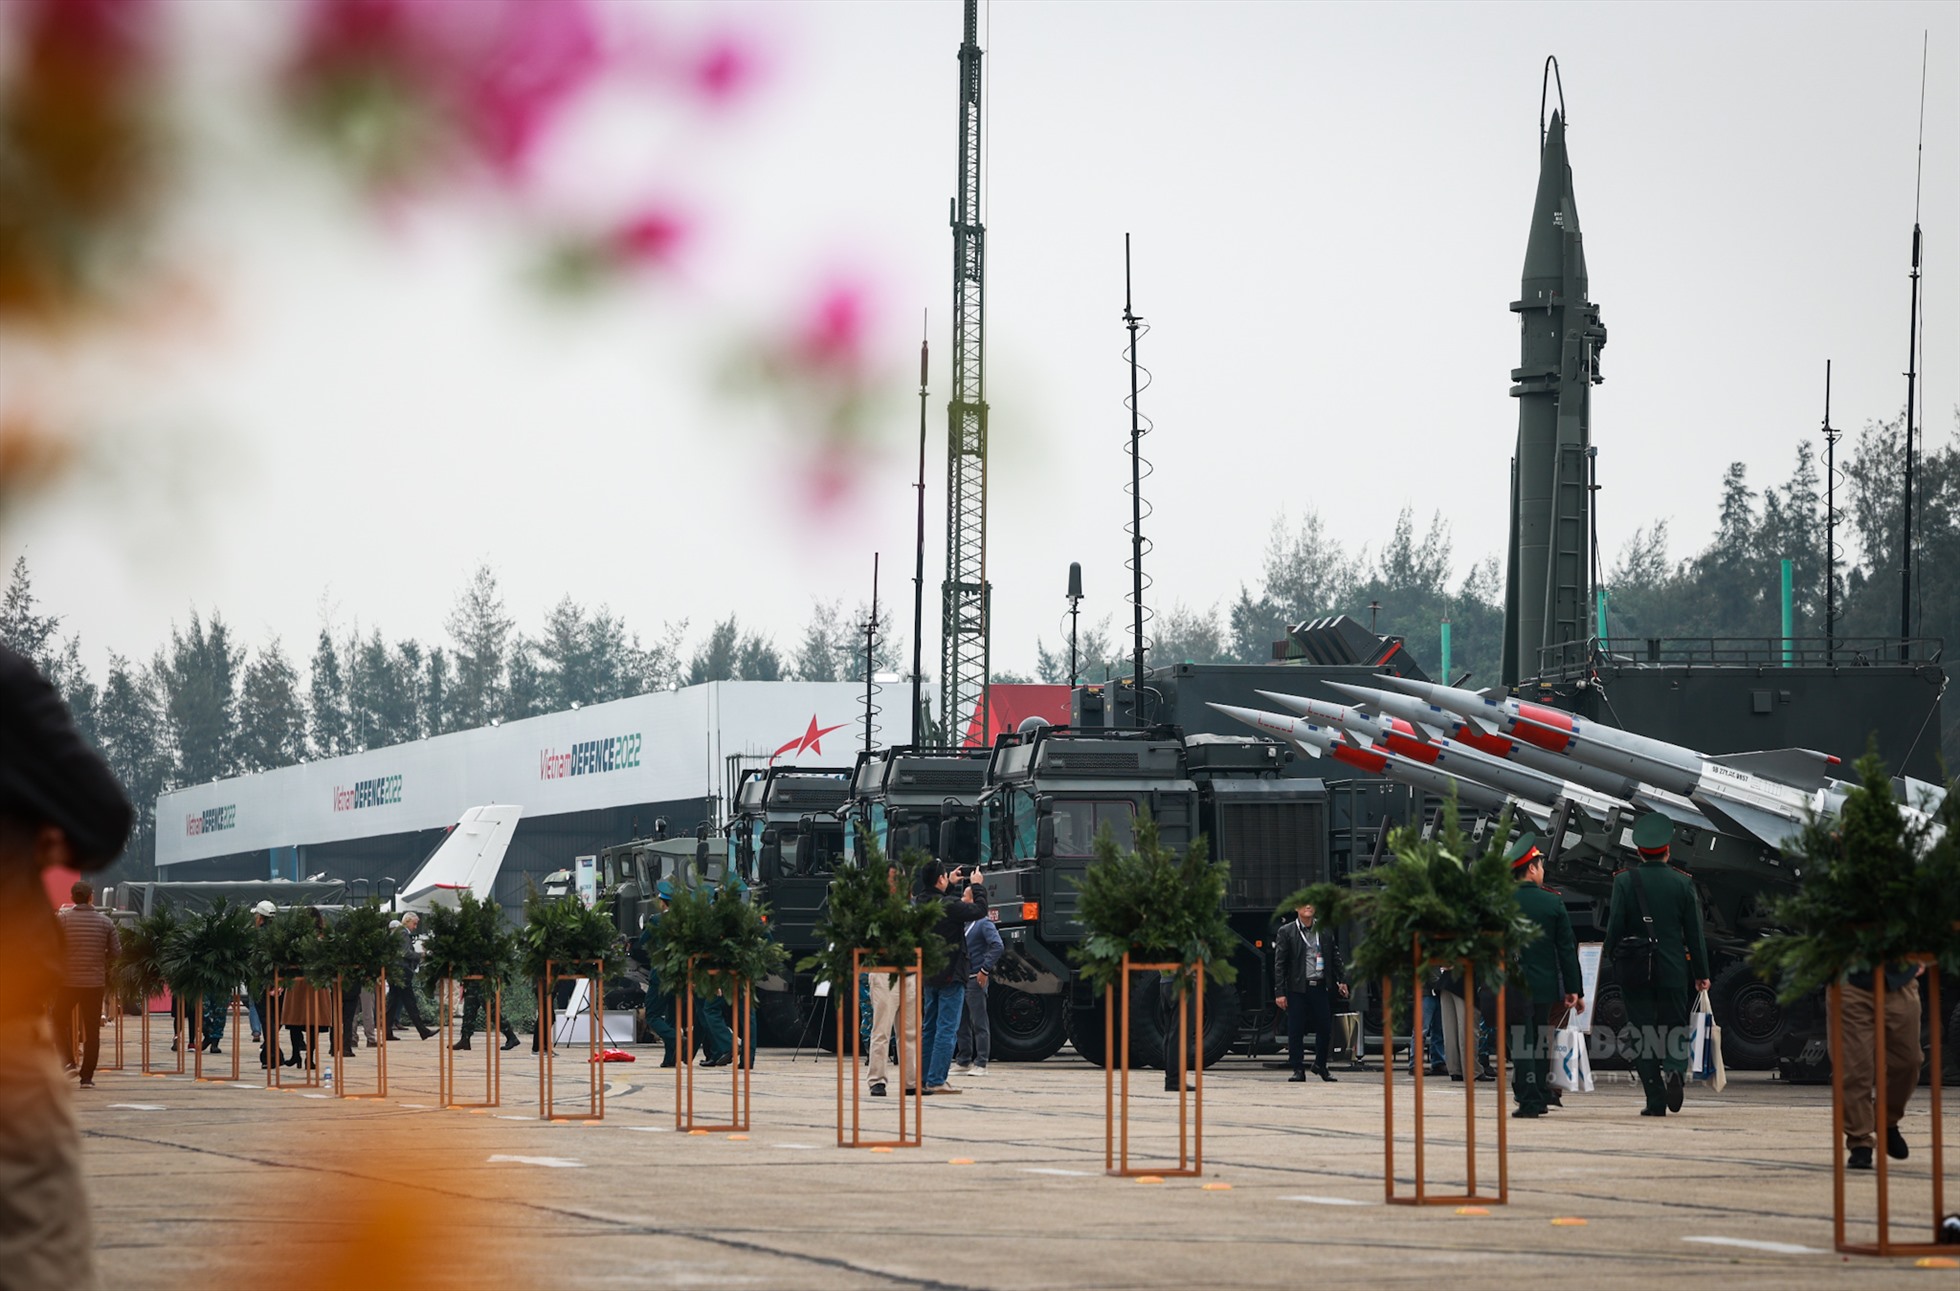 Tại triển lãm quốc phòng quốc tế Việt Nam 2022, ngoài một số vũ khí hạng nặng trang bị của quân đội Nhân dân Việt Nam được trưng bày như tên lửa đất đối đất Scud-B (R17E), xe tăng T90SK hay tổ hợp tên lửa phòng không... thì nhiều nhà sản xuất vũ khí quốc tế đã mang đến triển lãm nhiều mẫu vũ khí cá nhân.